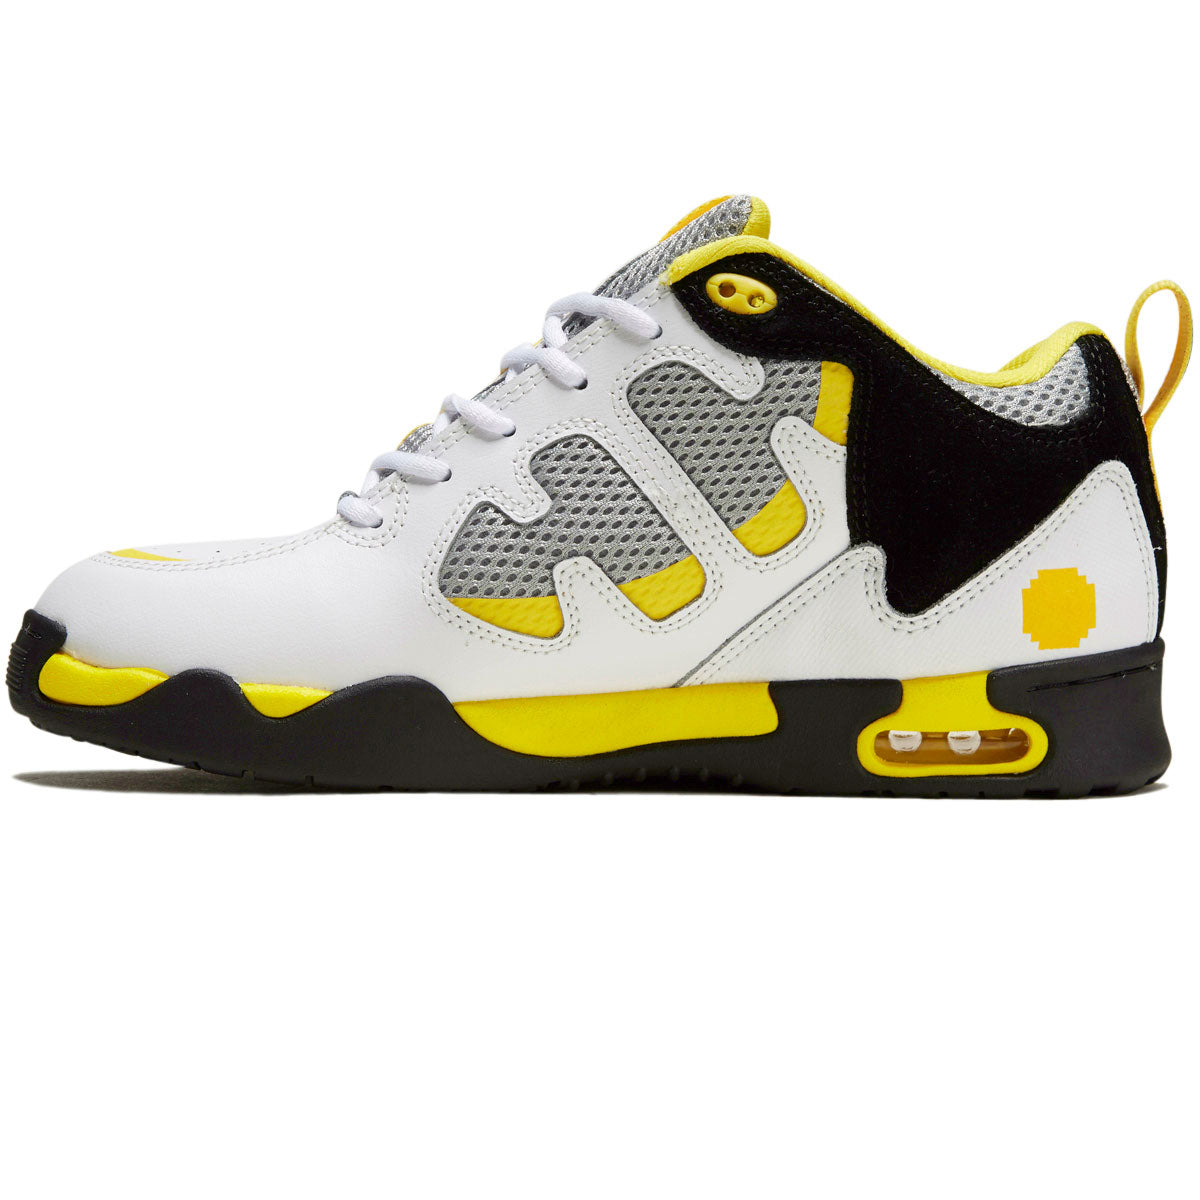 eS x Chomp On Kicks Tribo x Vireo Shoes - White/Black/Yellow image 2